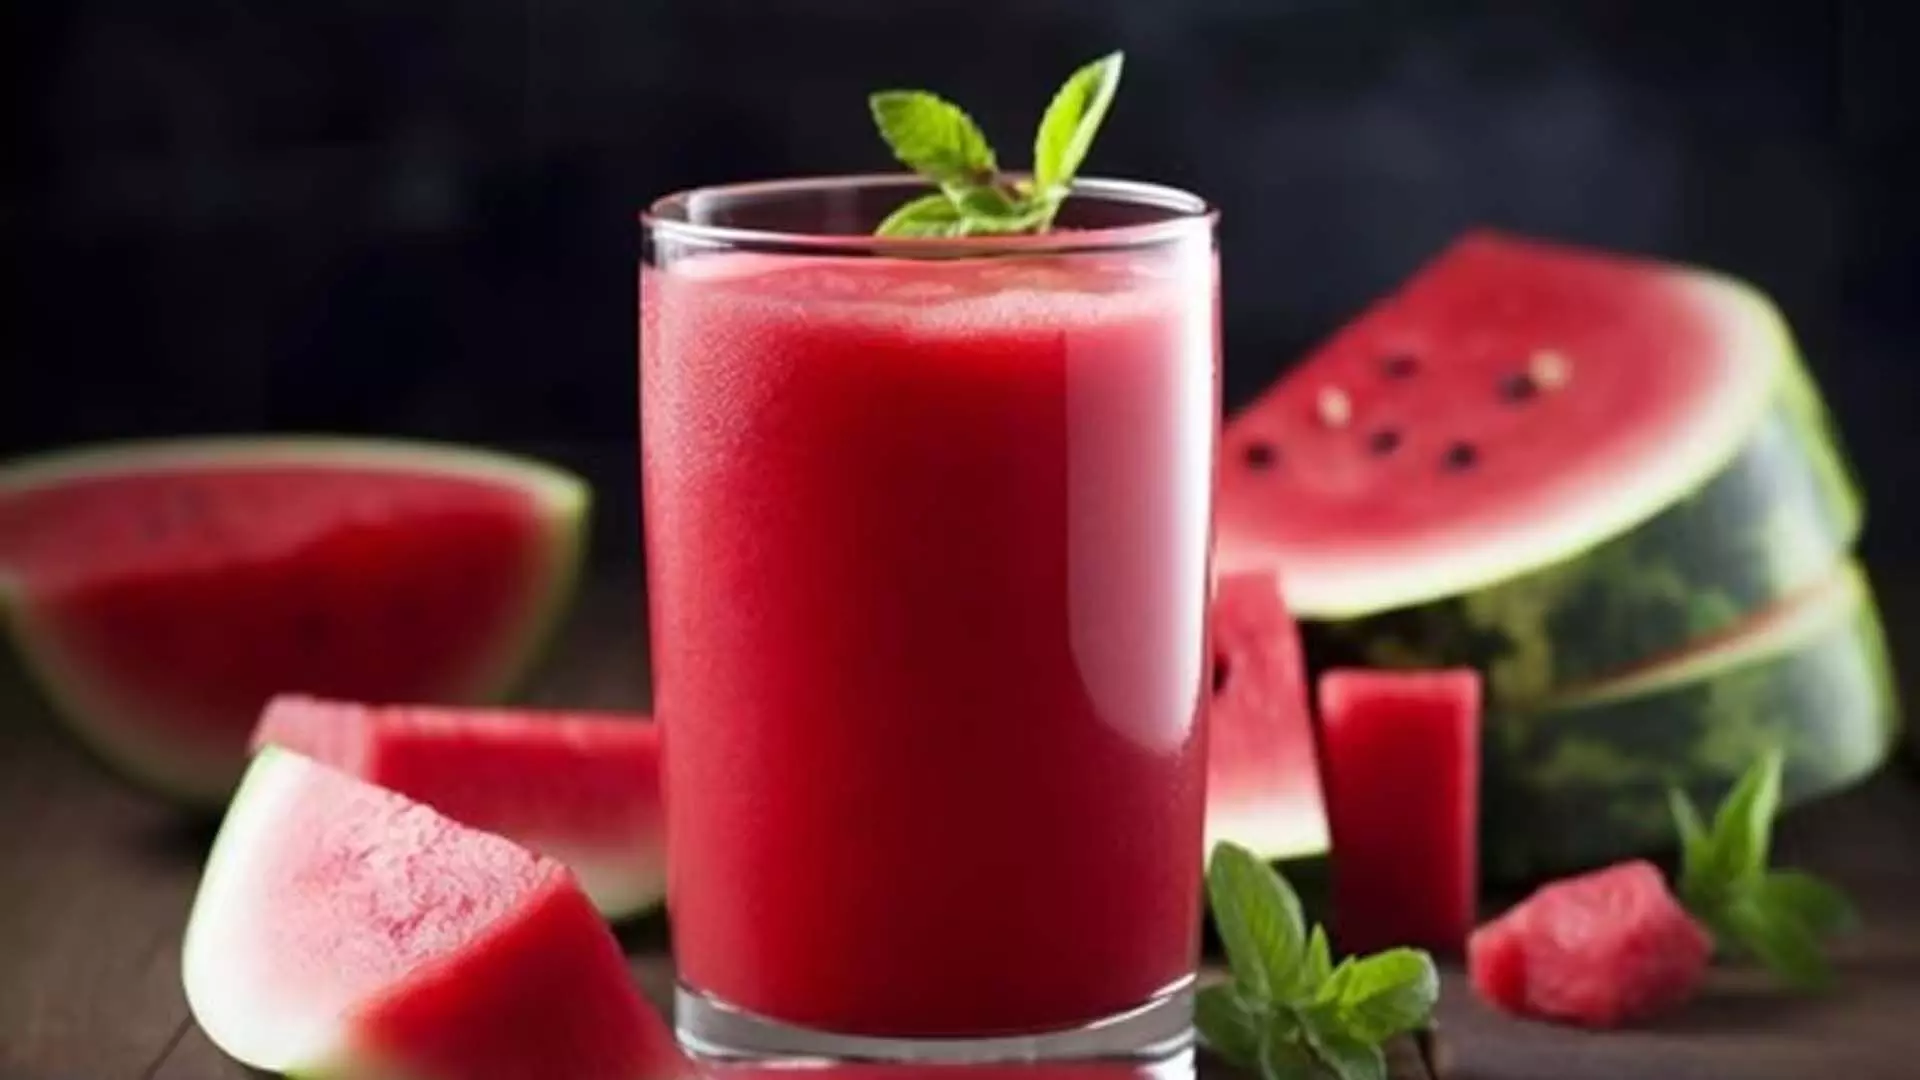 तरबूज स्ट्रॉबेरी स्मूदी आपकी गर्मियों की त्वचा के लिए लाभदायक